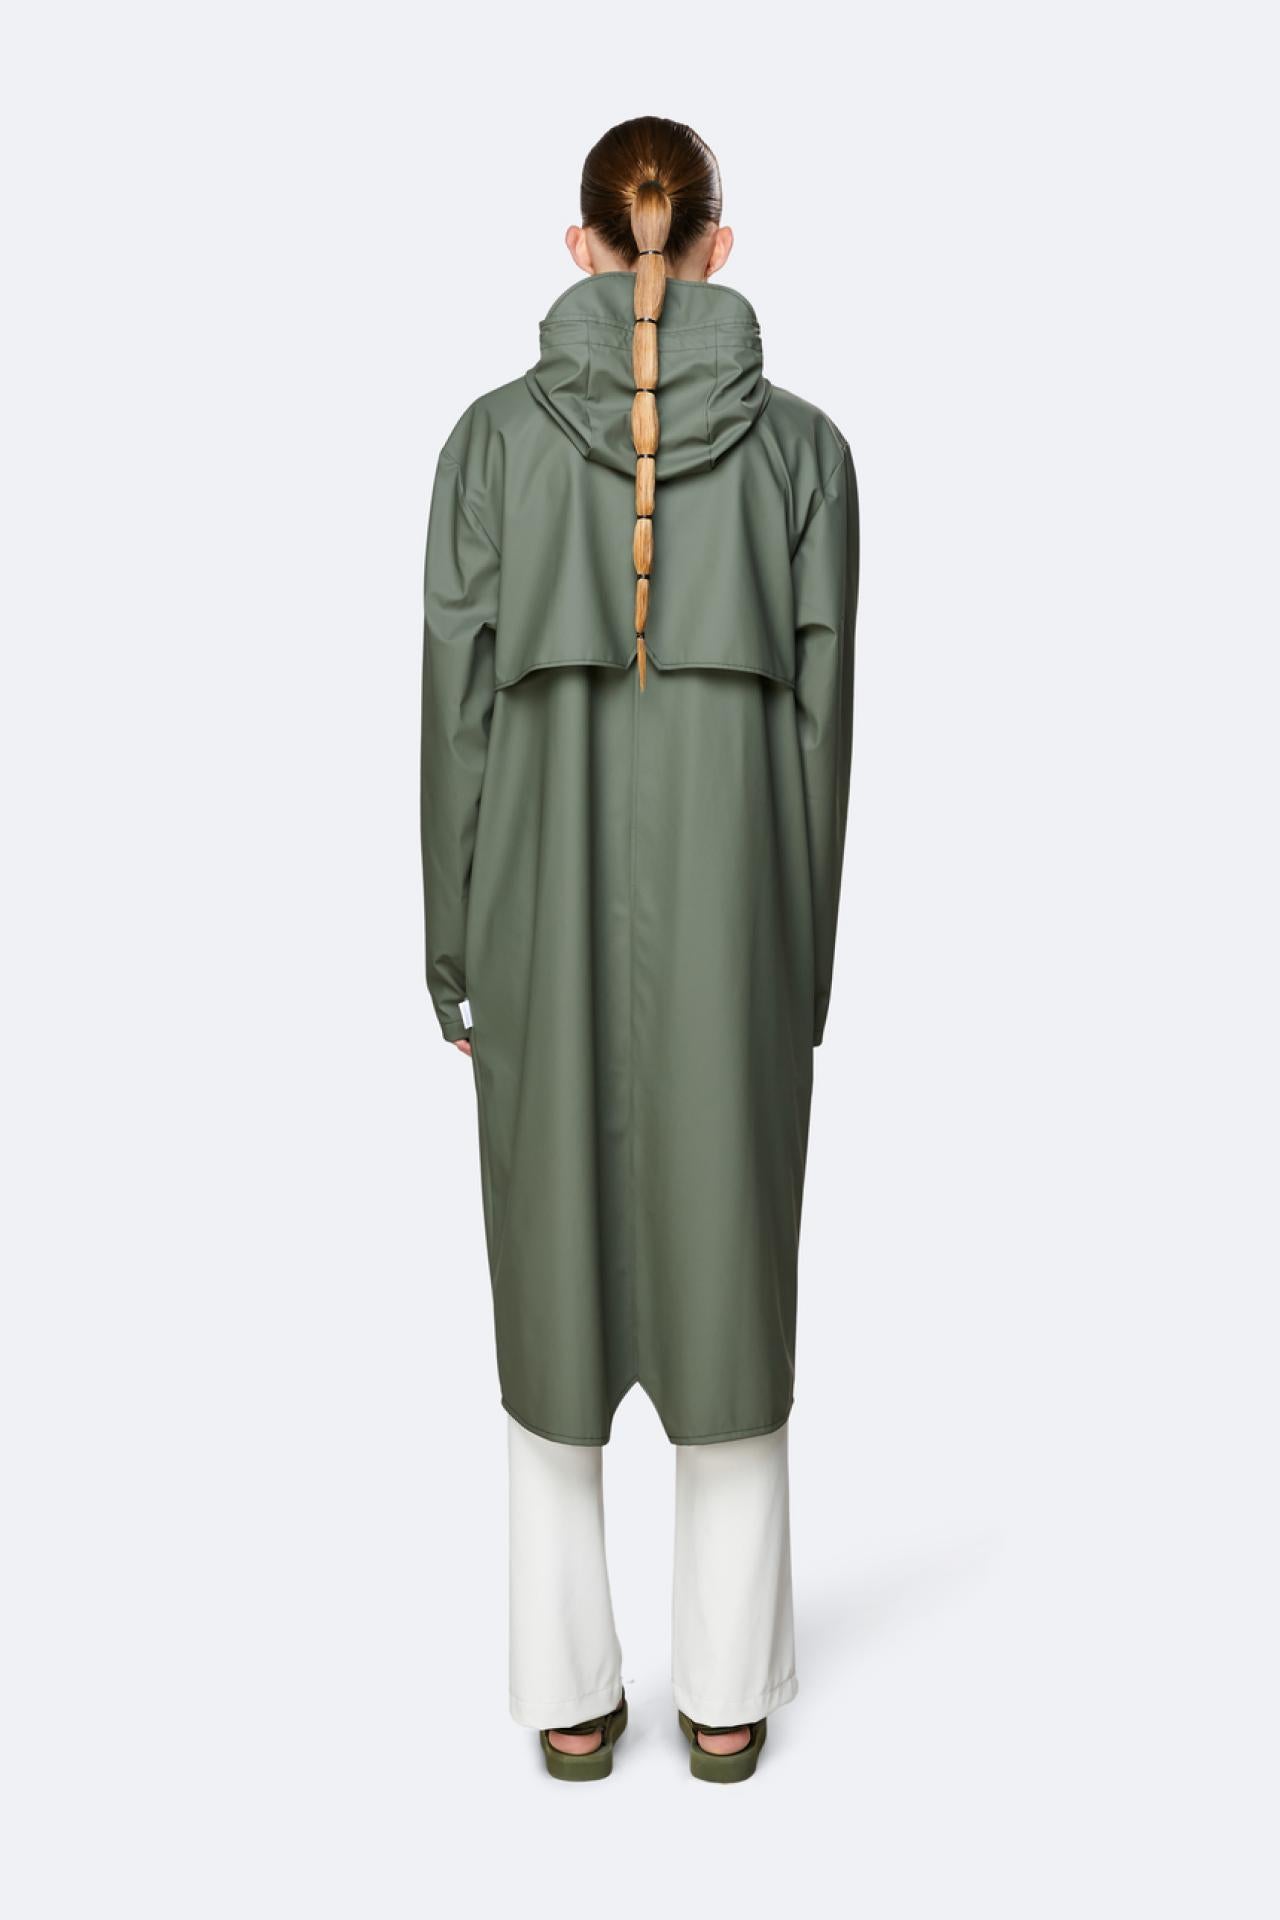 Rains Regenjacke Longer Jacket 1836 Olive - Größe: L/XL